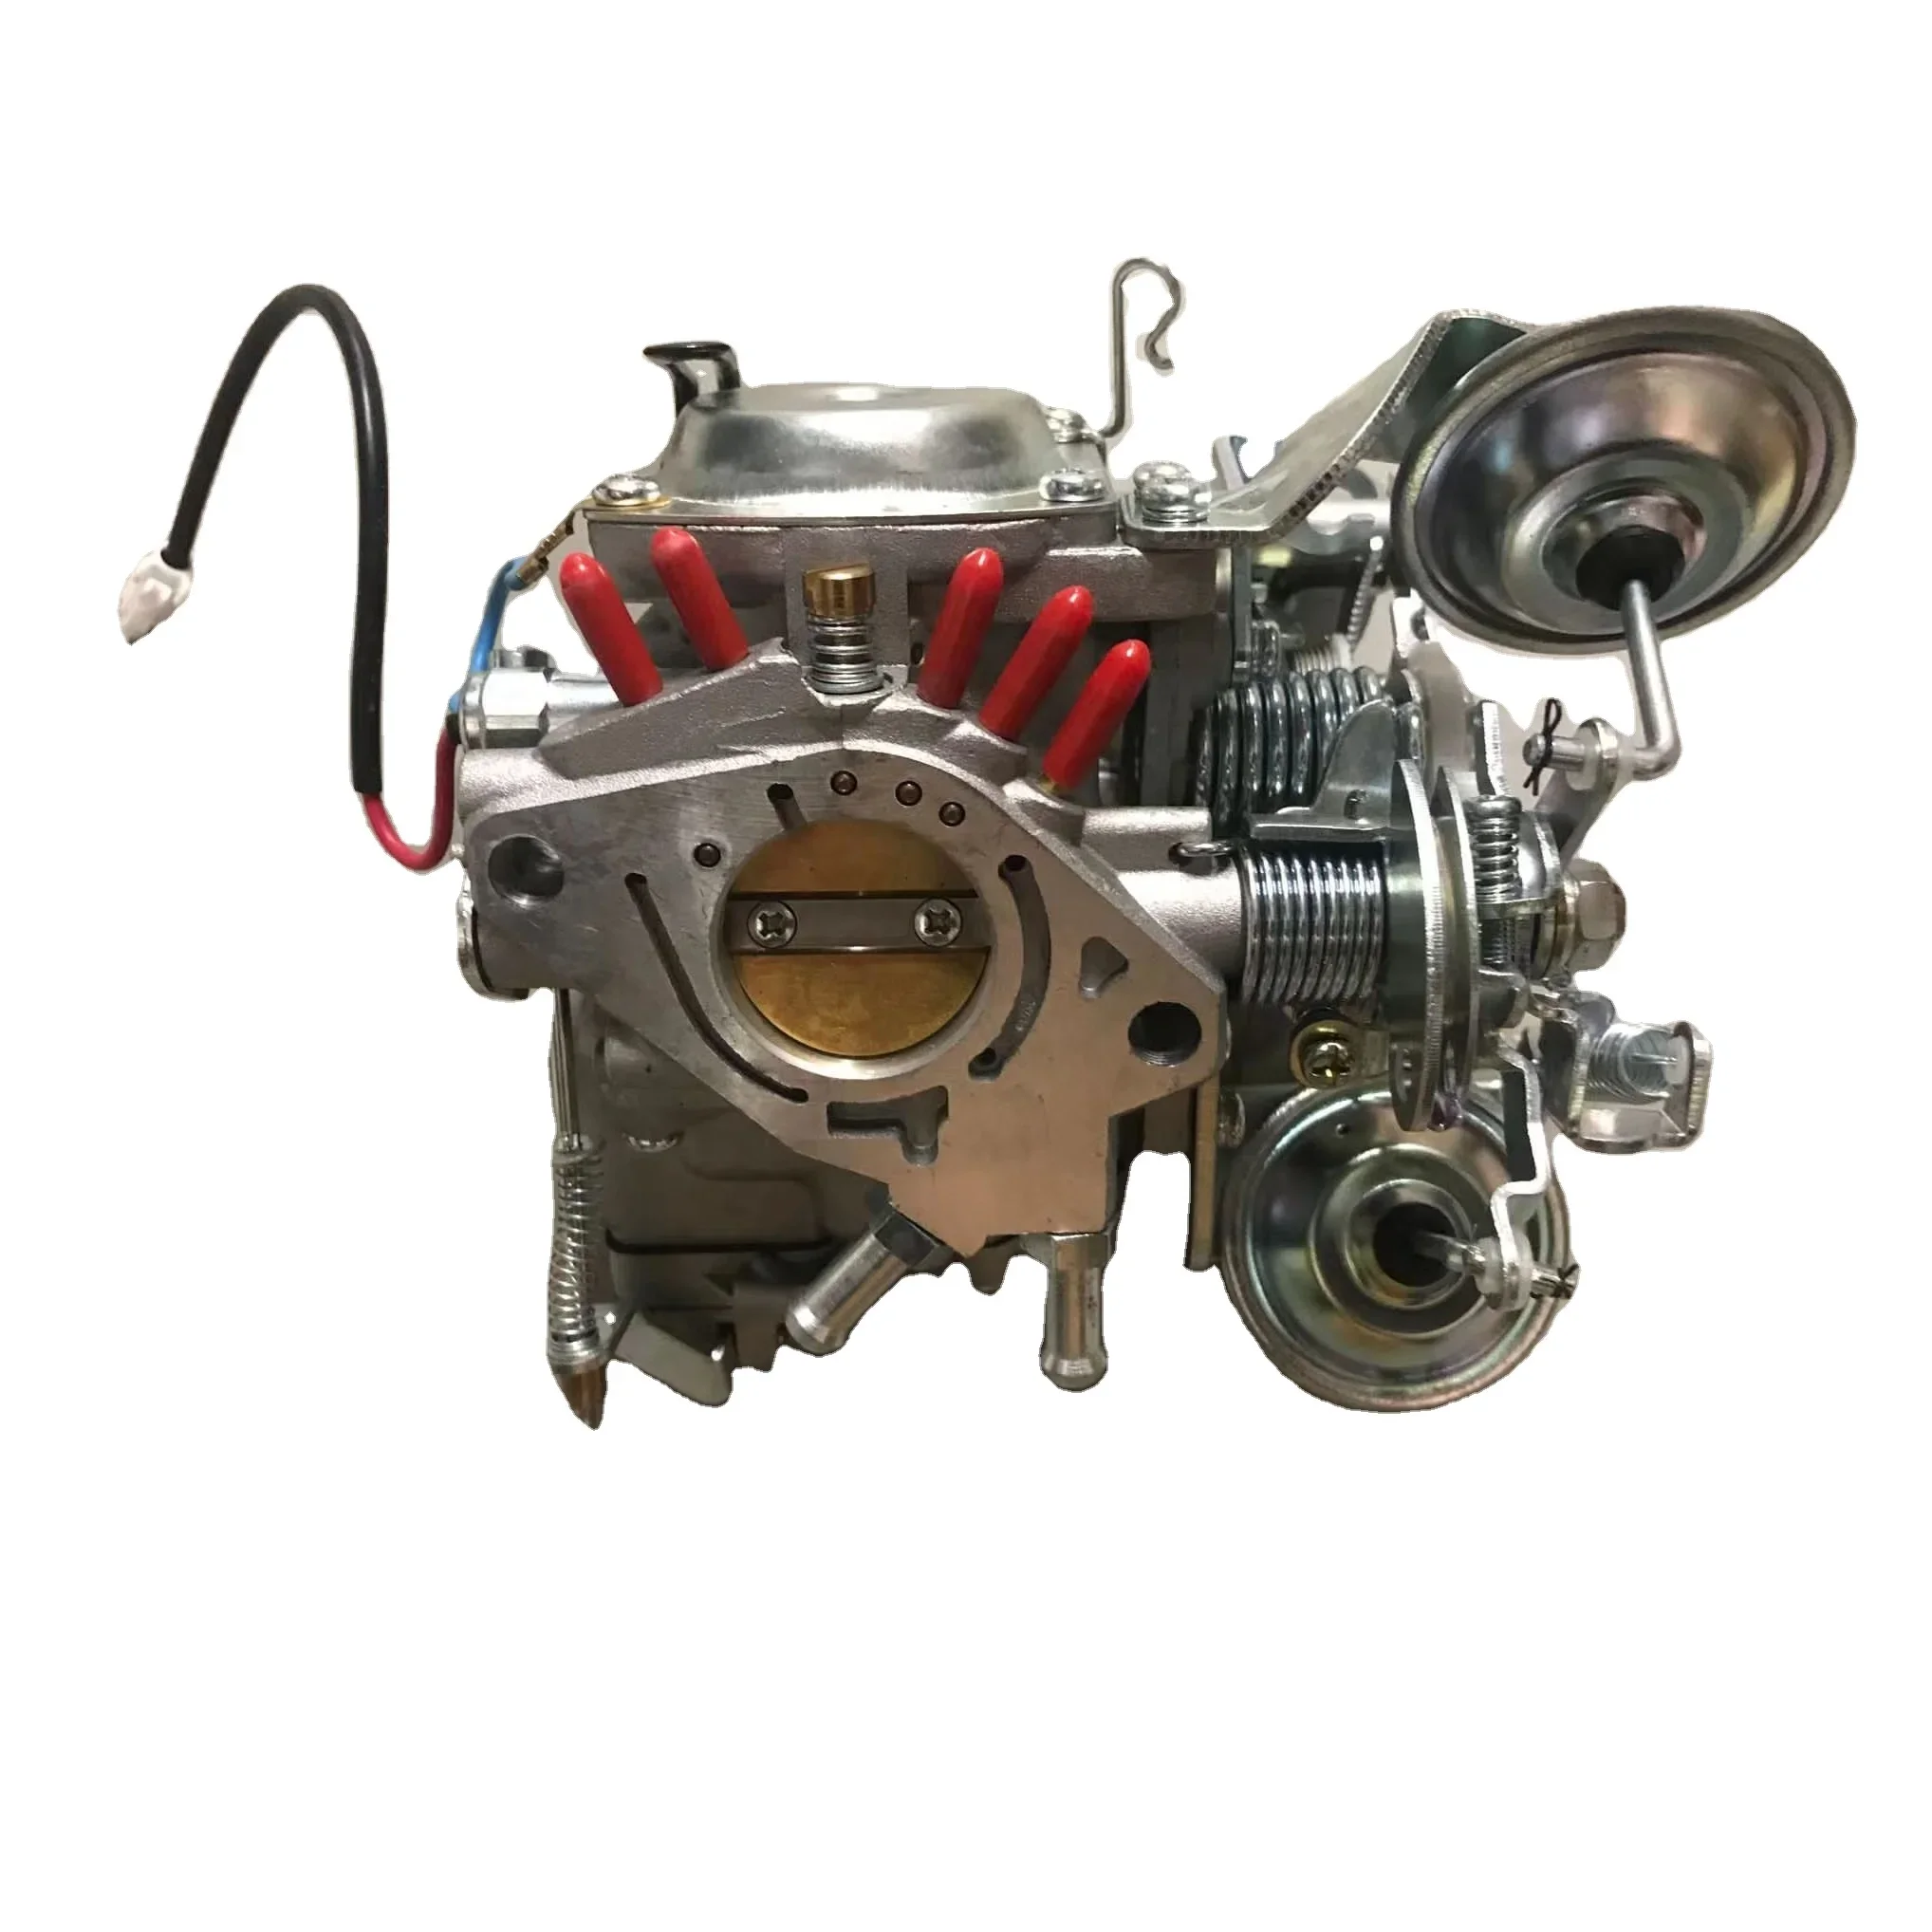 

DD51T carburetor F6A engine carburetor for SUZUKI mini truck OEM 13202-77D44-000 13200-77530 new F6A carburetor and old F6A